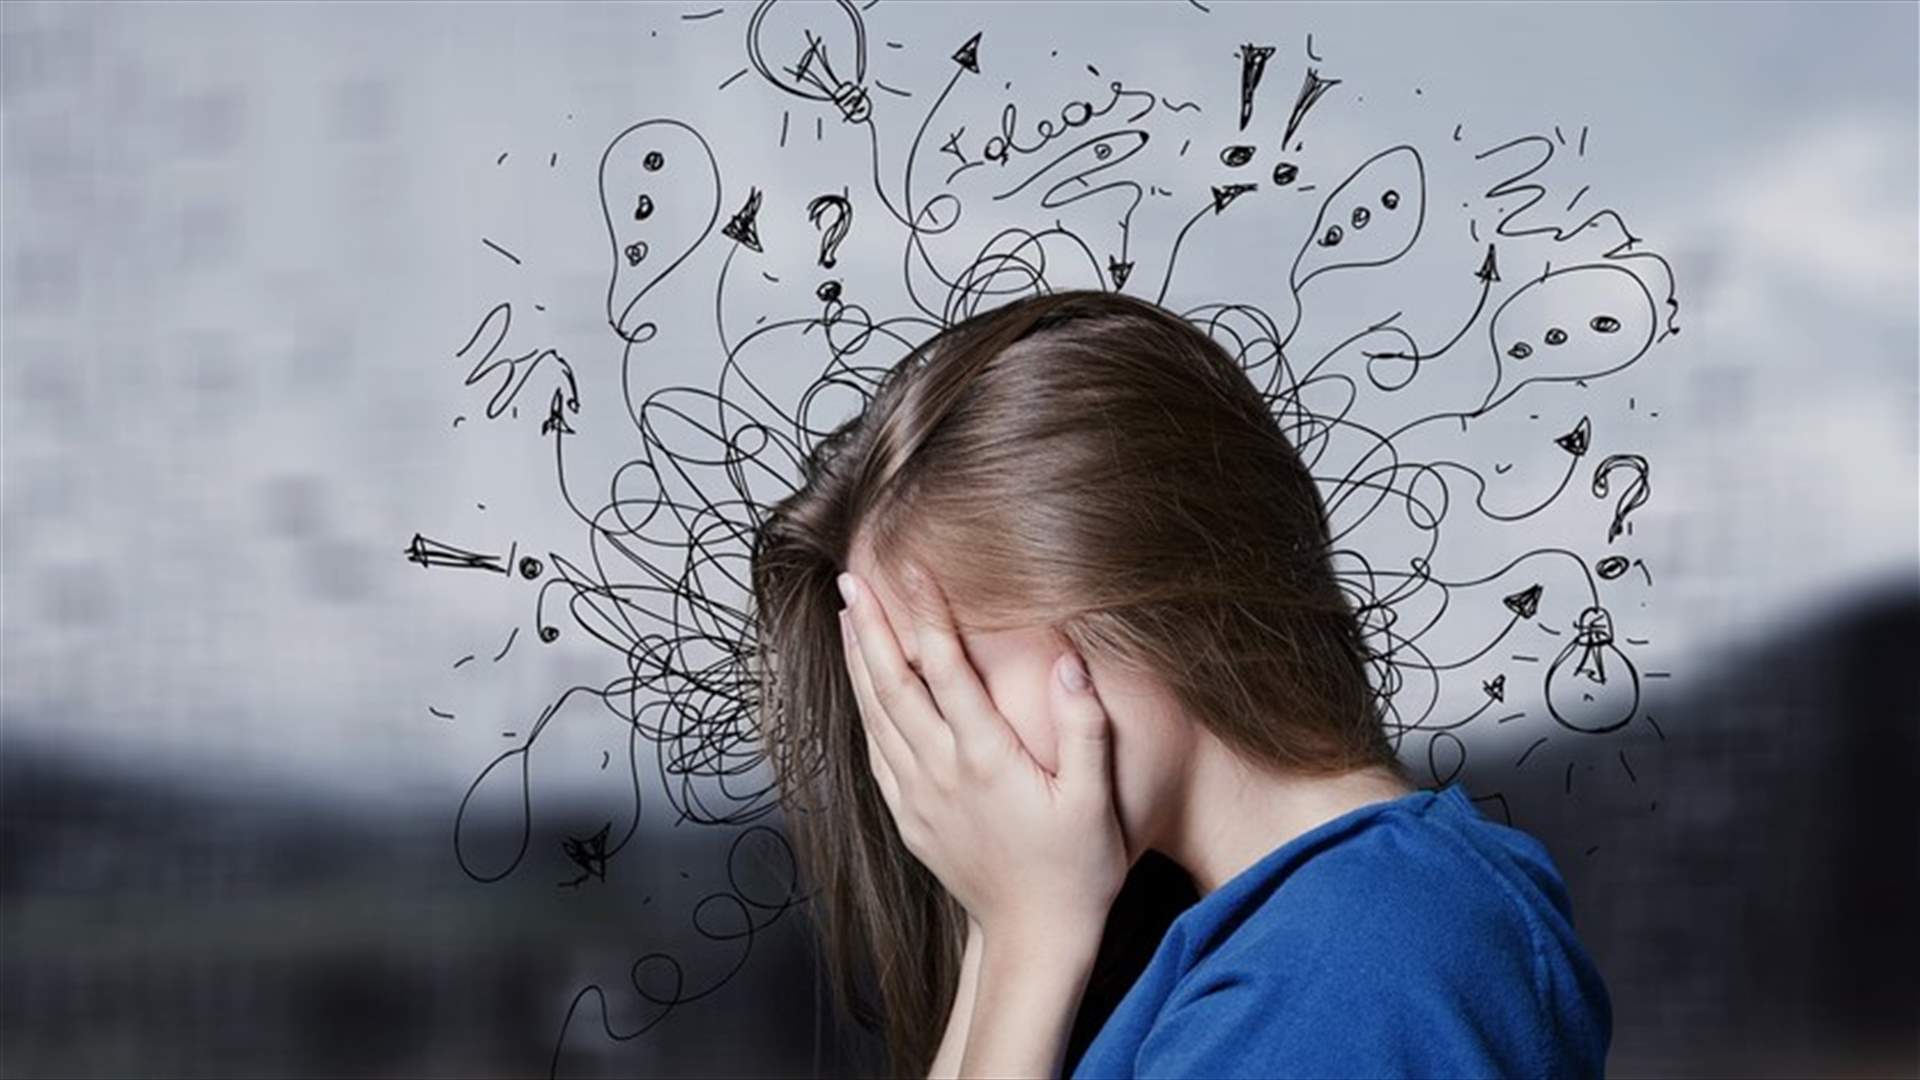 دراسة... حالات الإكتئاب والقلق زادت مع جائحة كورونا بخاصة لدى النساء والشباب